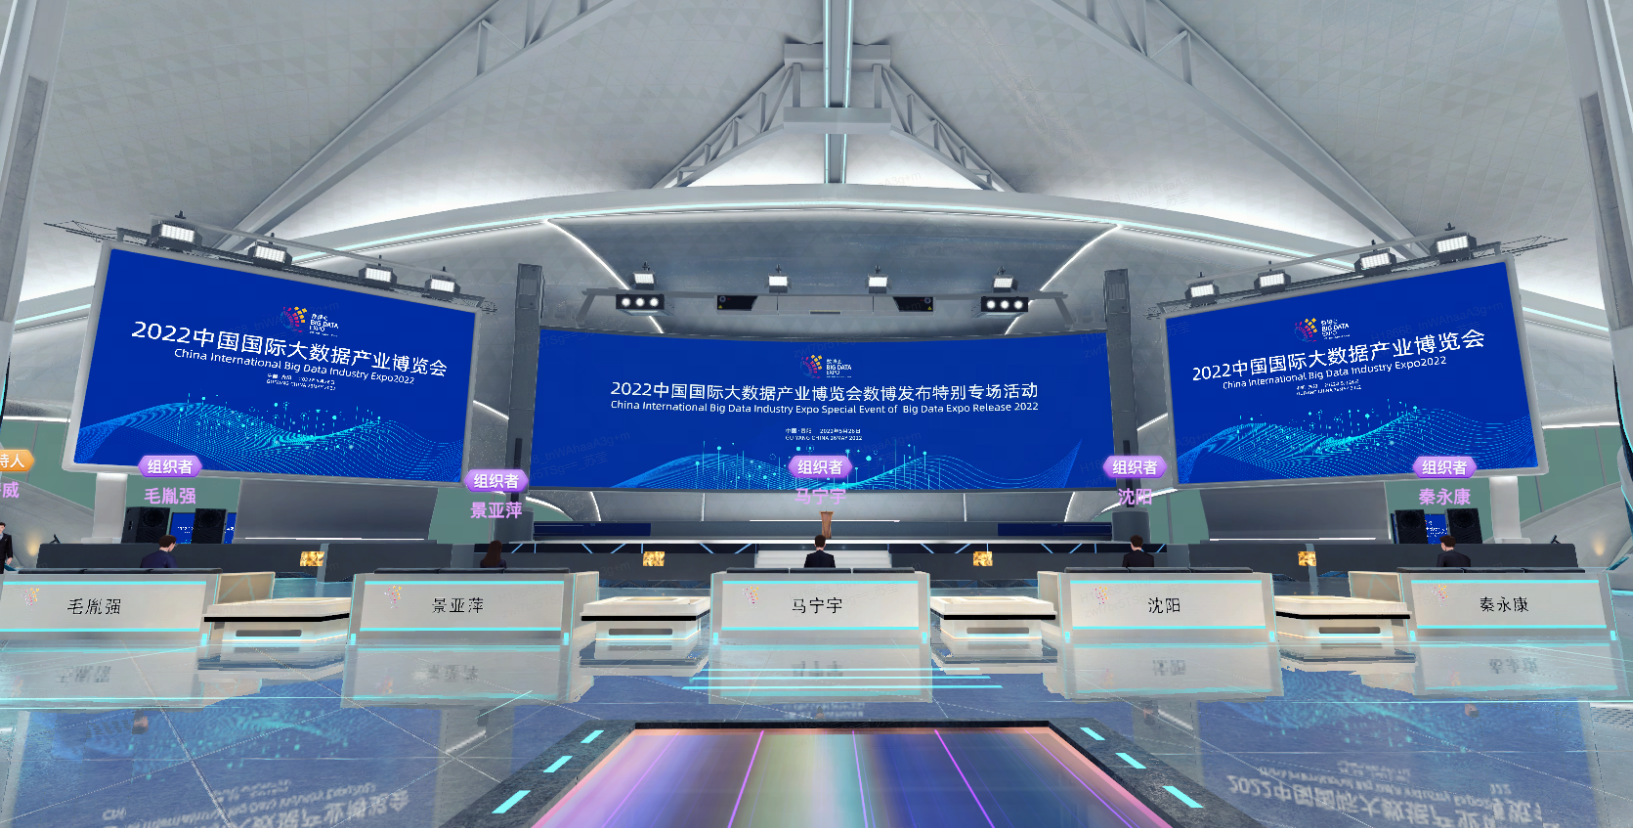 图片展示一个现代化会议场馆内部，设有多个服务台和大型显示屏，显示屏上有中文文字信息，场馆设计现代且科技感强。